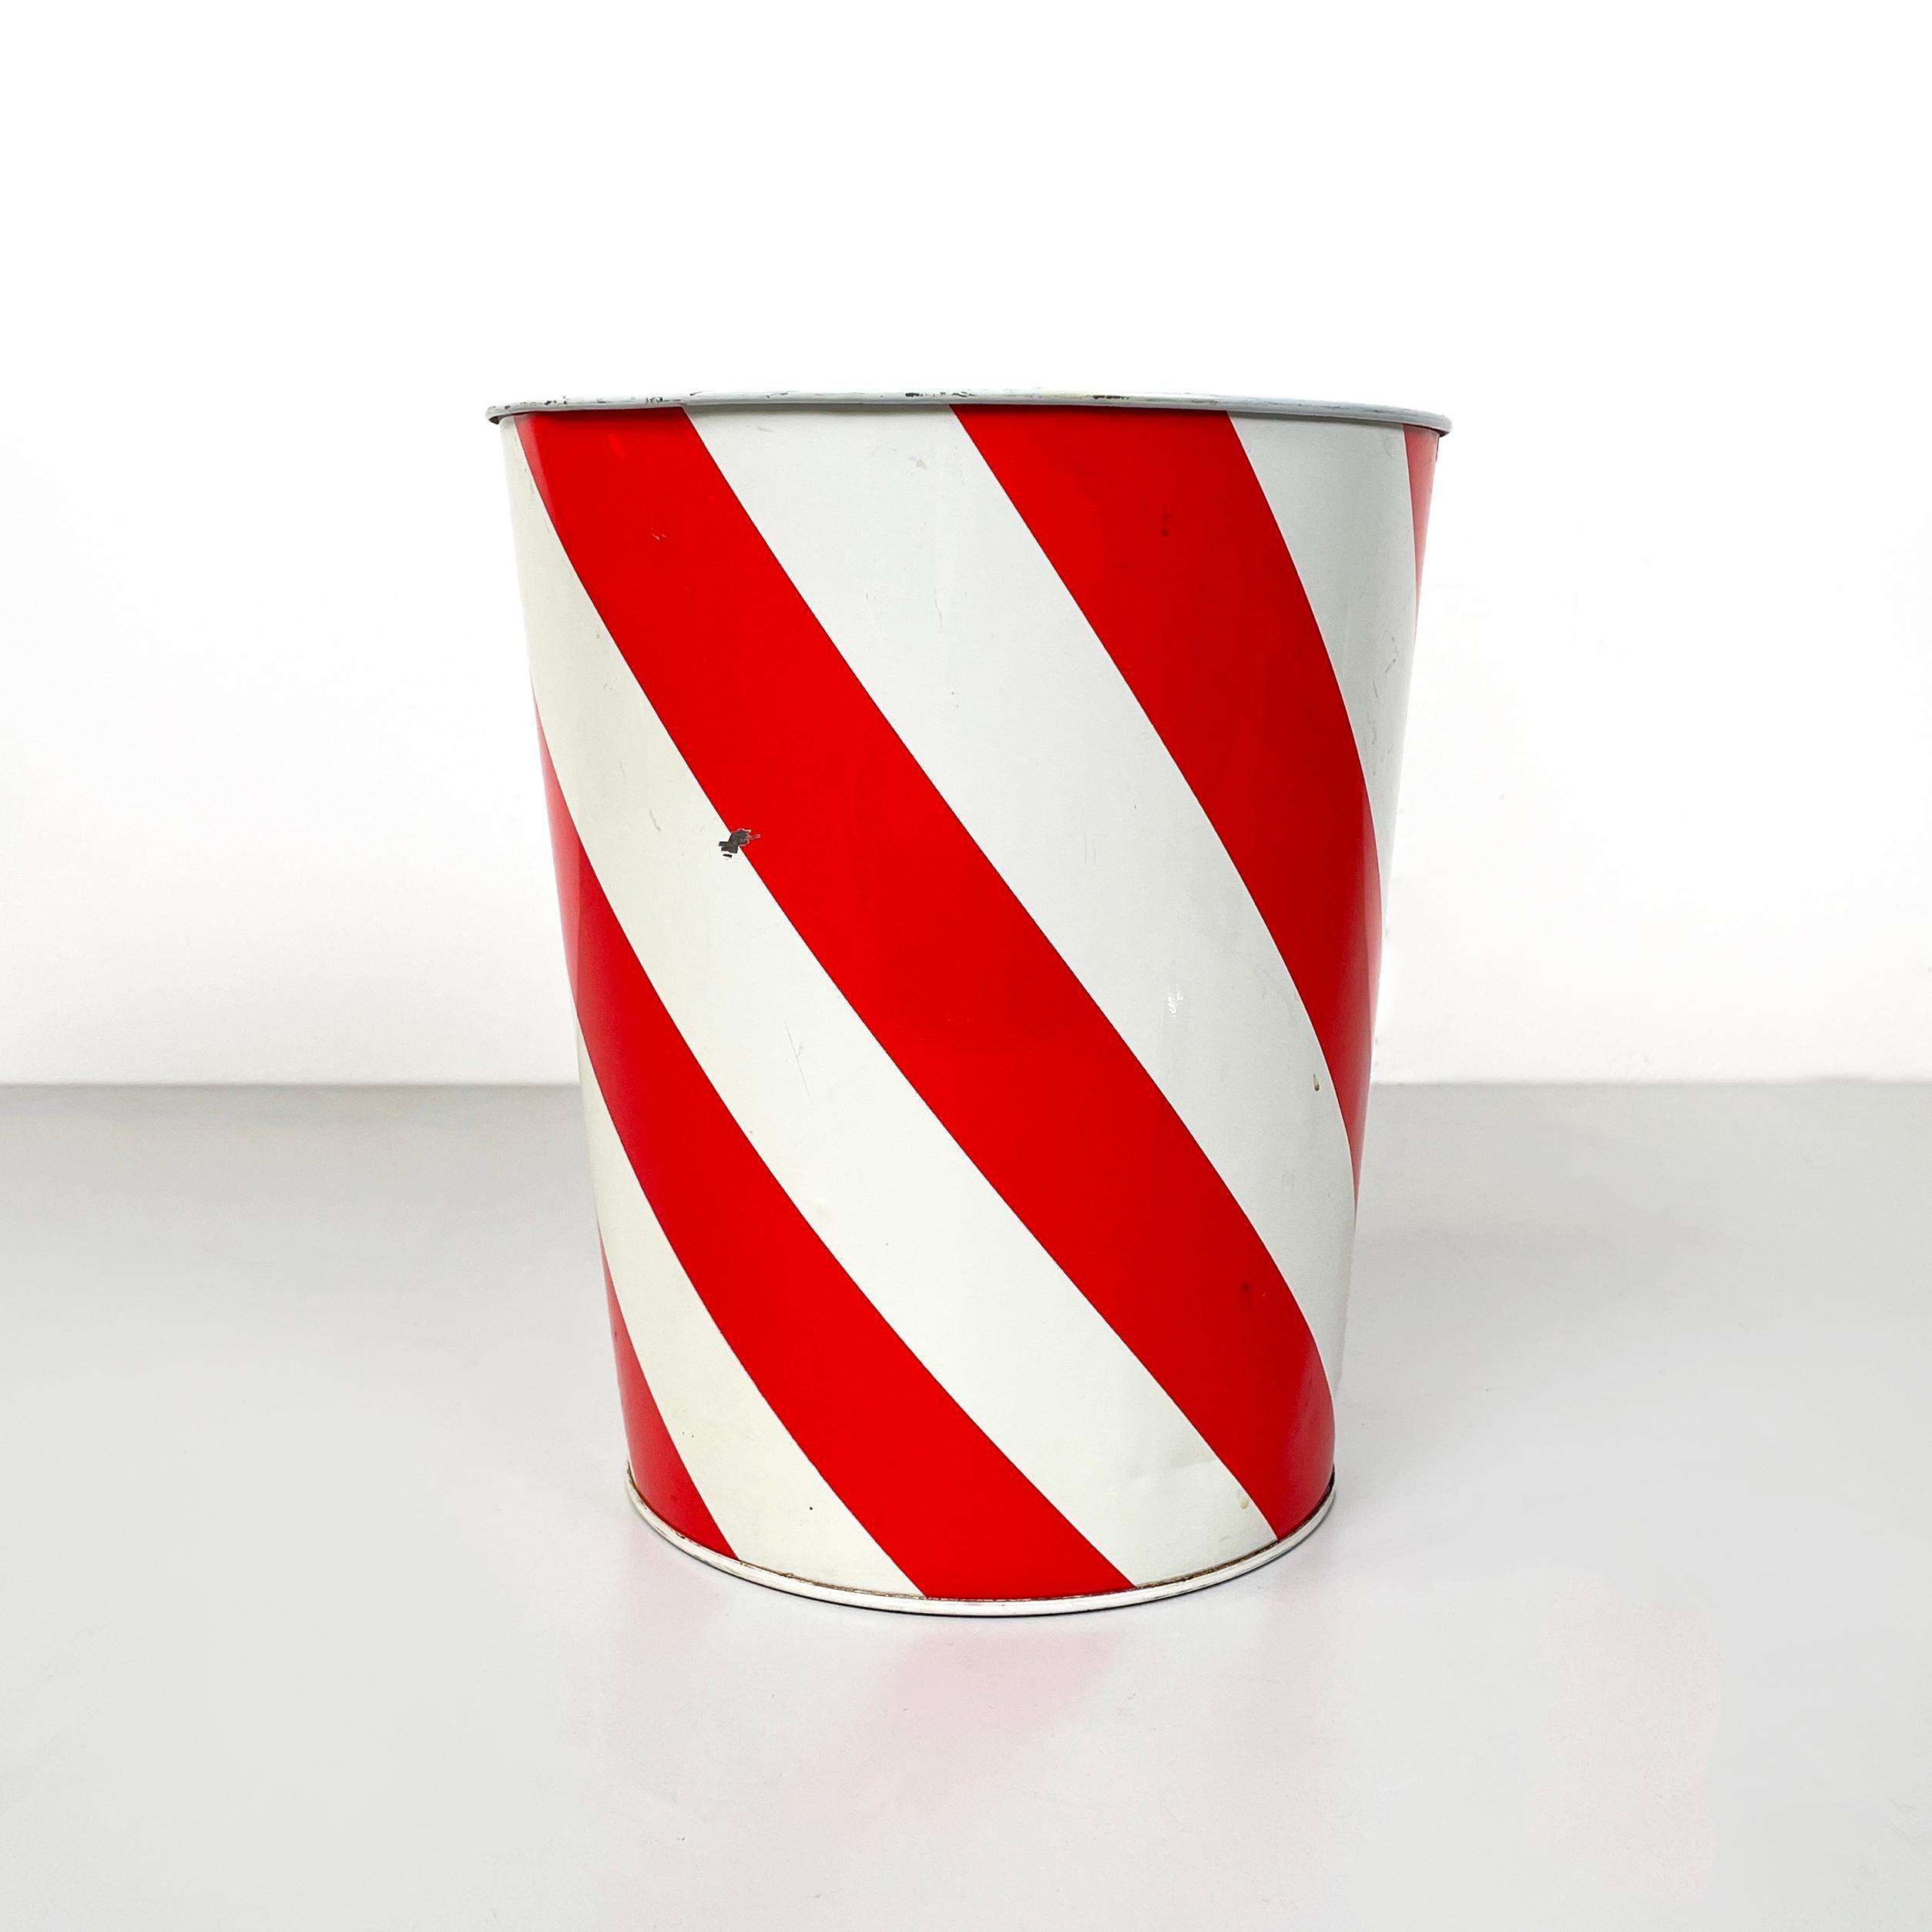 England modern Runder Papierkorb aus rotem und weißem Metall, 1990er Jahre
Runder Papierkorb aus lackiertem Metall mit rot-weißem Spiralstreifendesign. Das obere Profil ist abgerundet. Die Struktur zieht sich nach unten hin immer mehr zusammen. Er